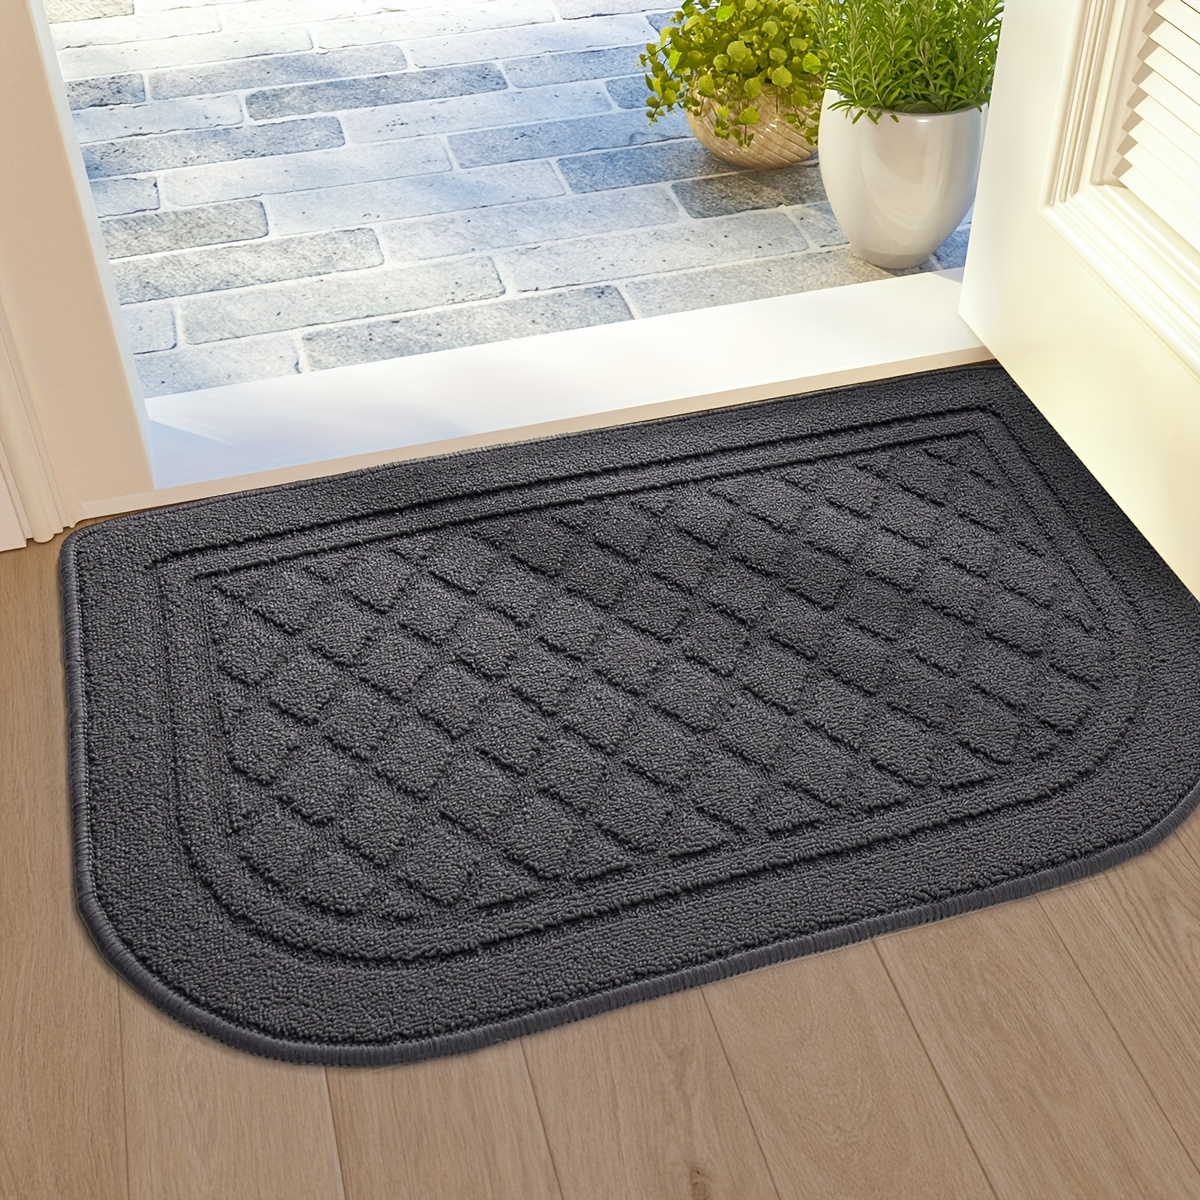 DEXI Original Indoor Doormat, Durable Absorbent Door Mats Indoor